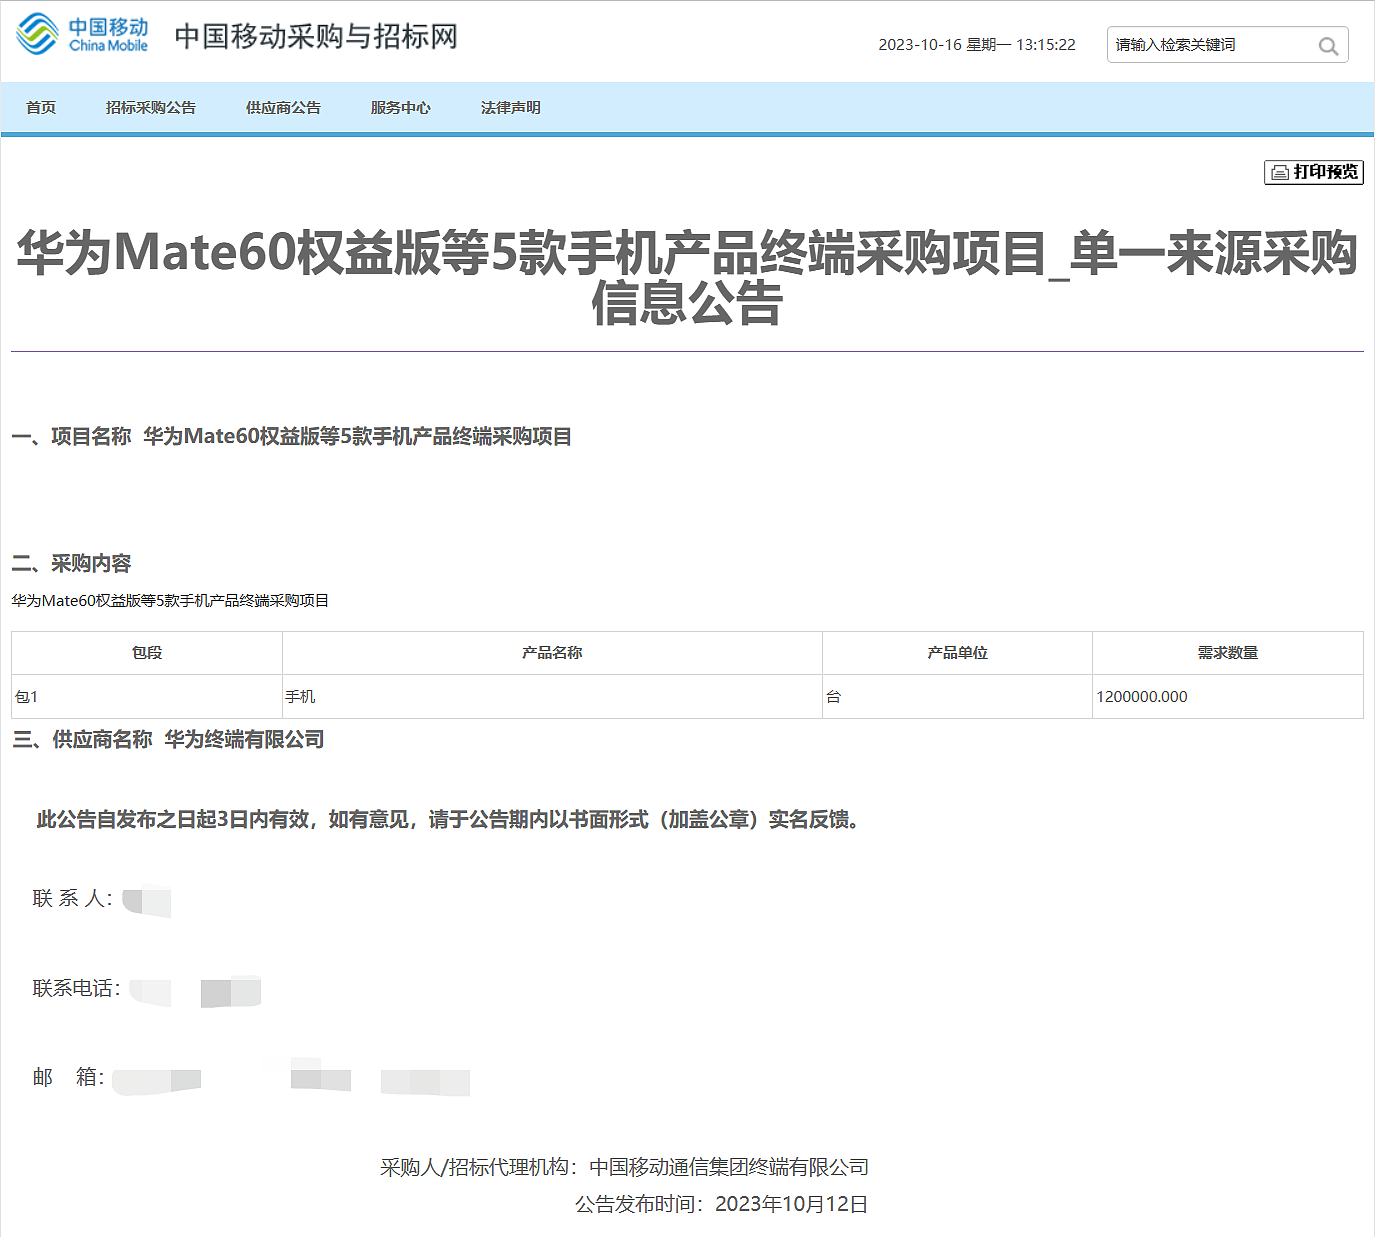 中国移动采购华为 Mate 60 等五款手机共计 120 万台 - 1